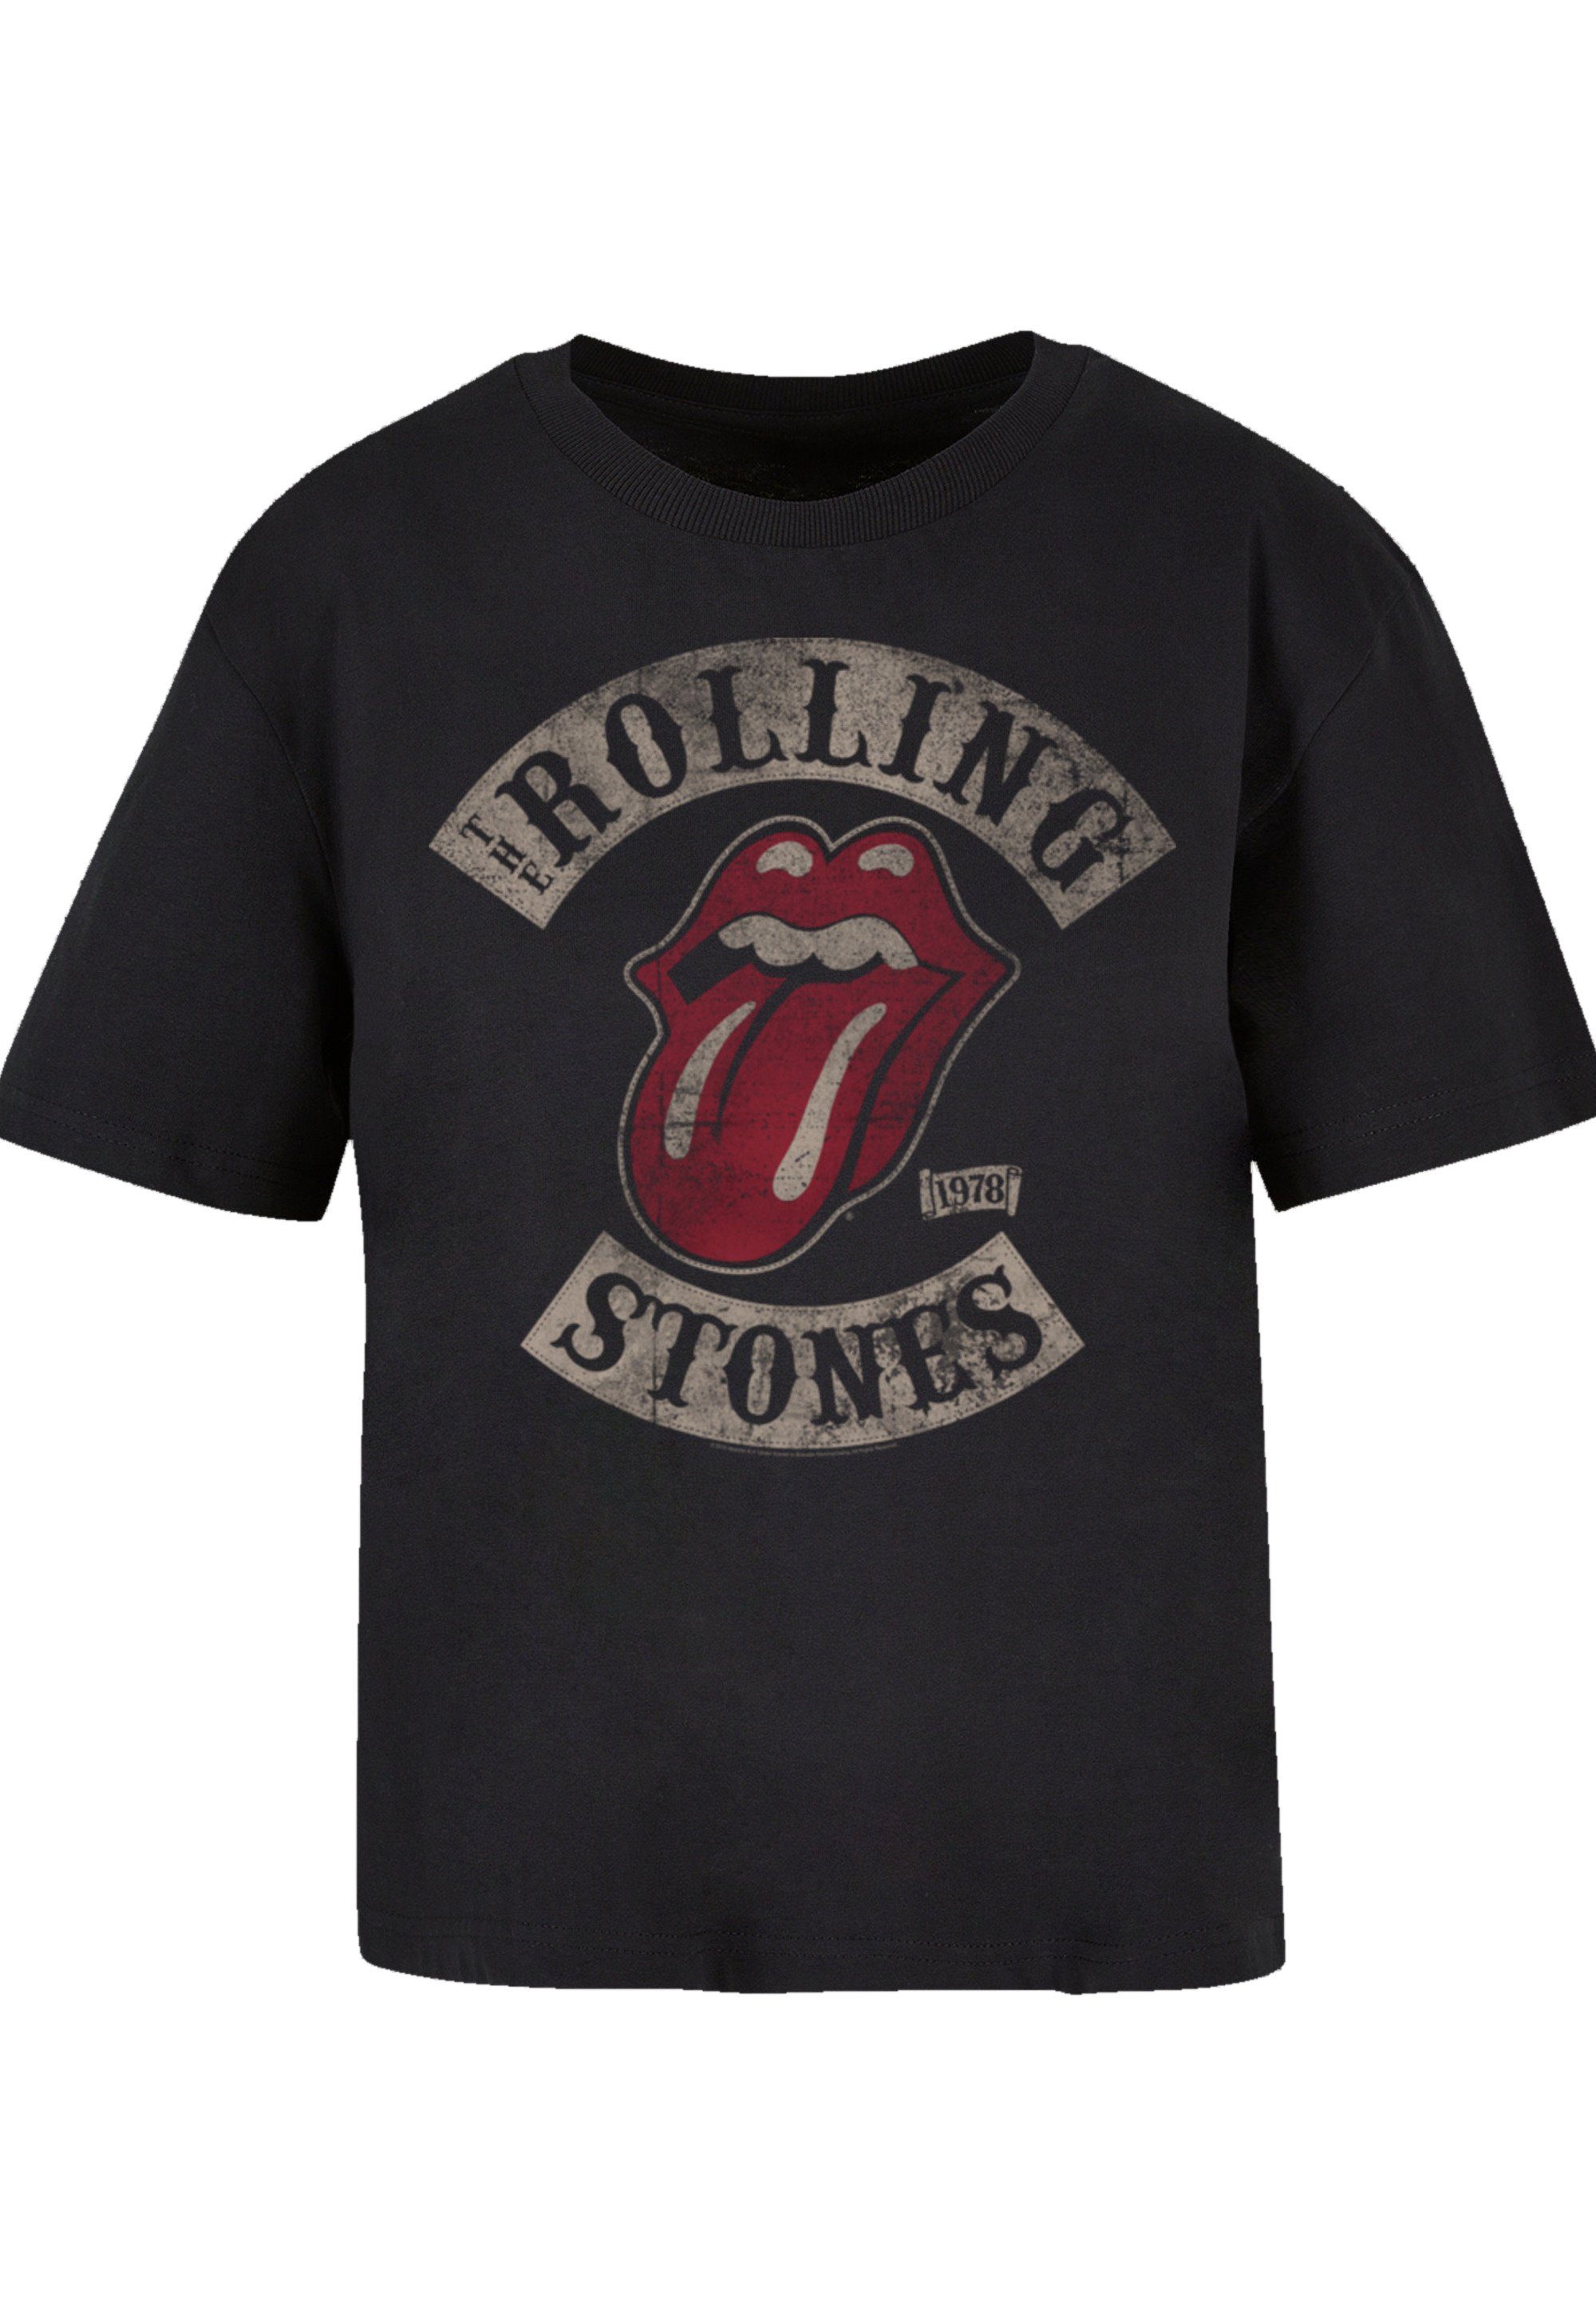 stylischen The Look T-Shirt F4NT4STIC Print, Stones Rolling \'78 Vector für Gerippter Tour Rundhalsausschnitt